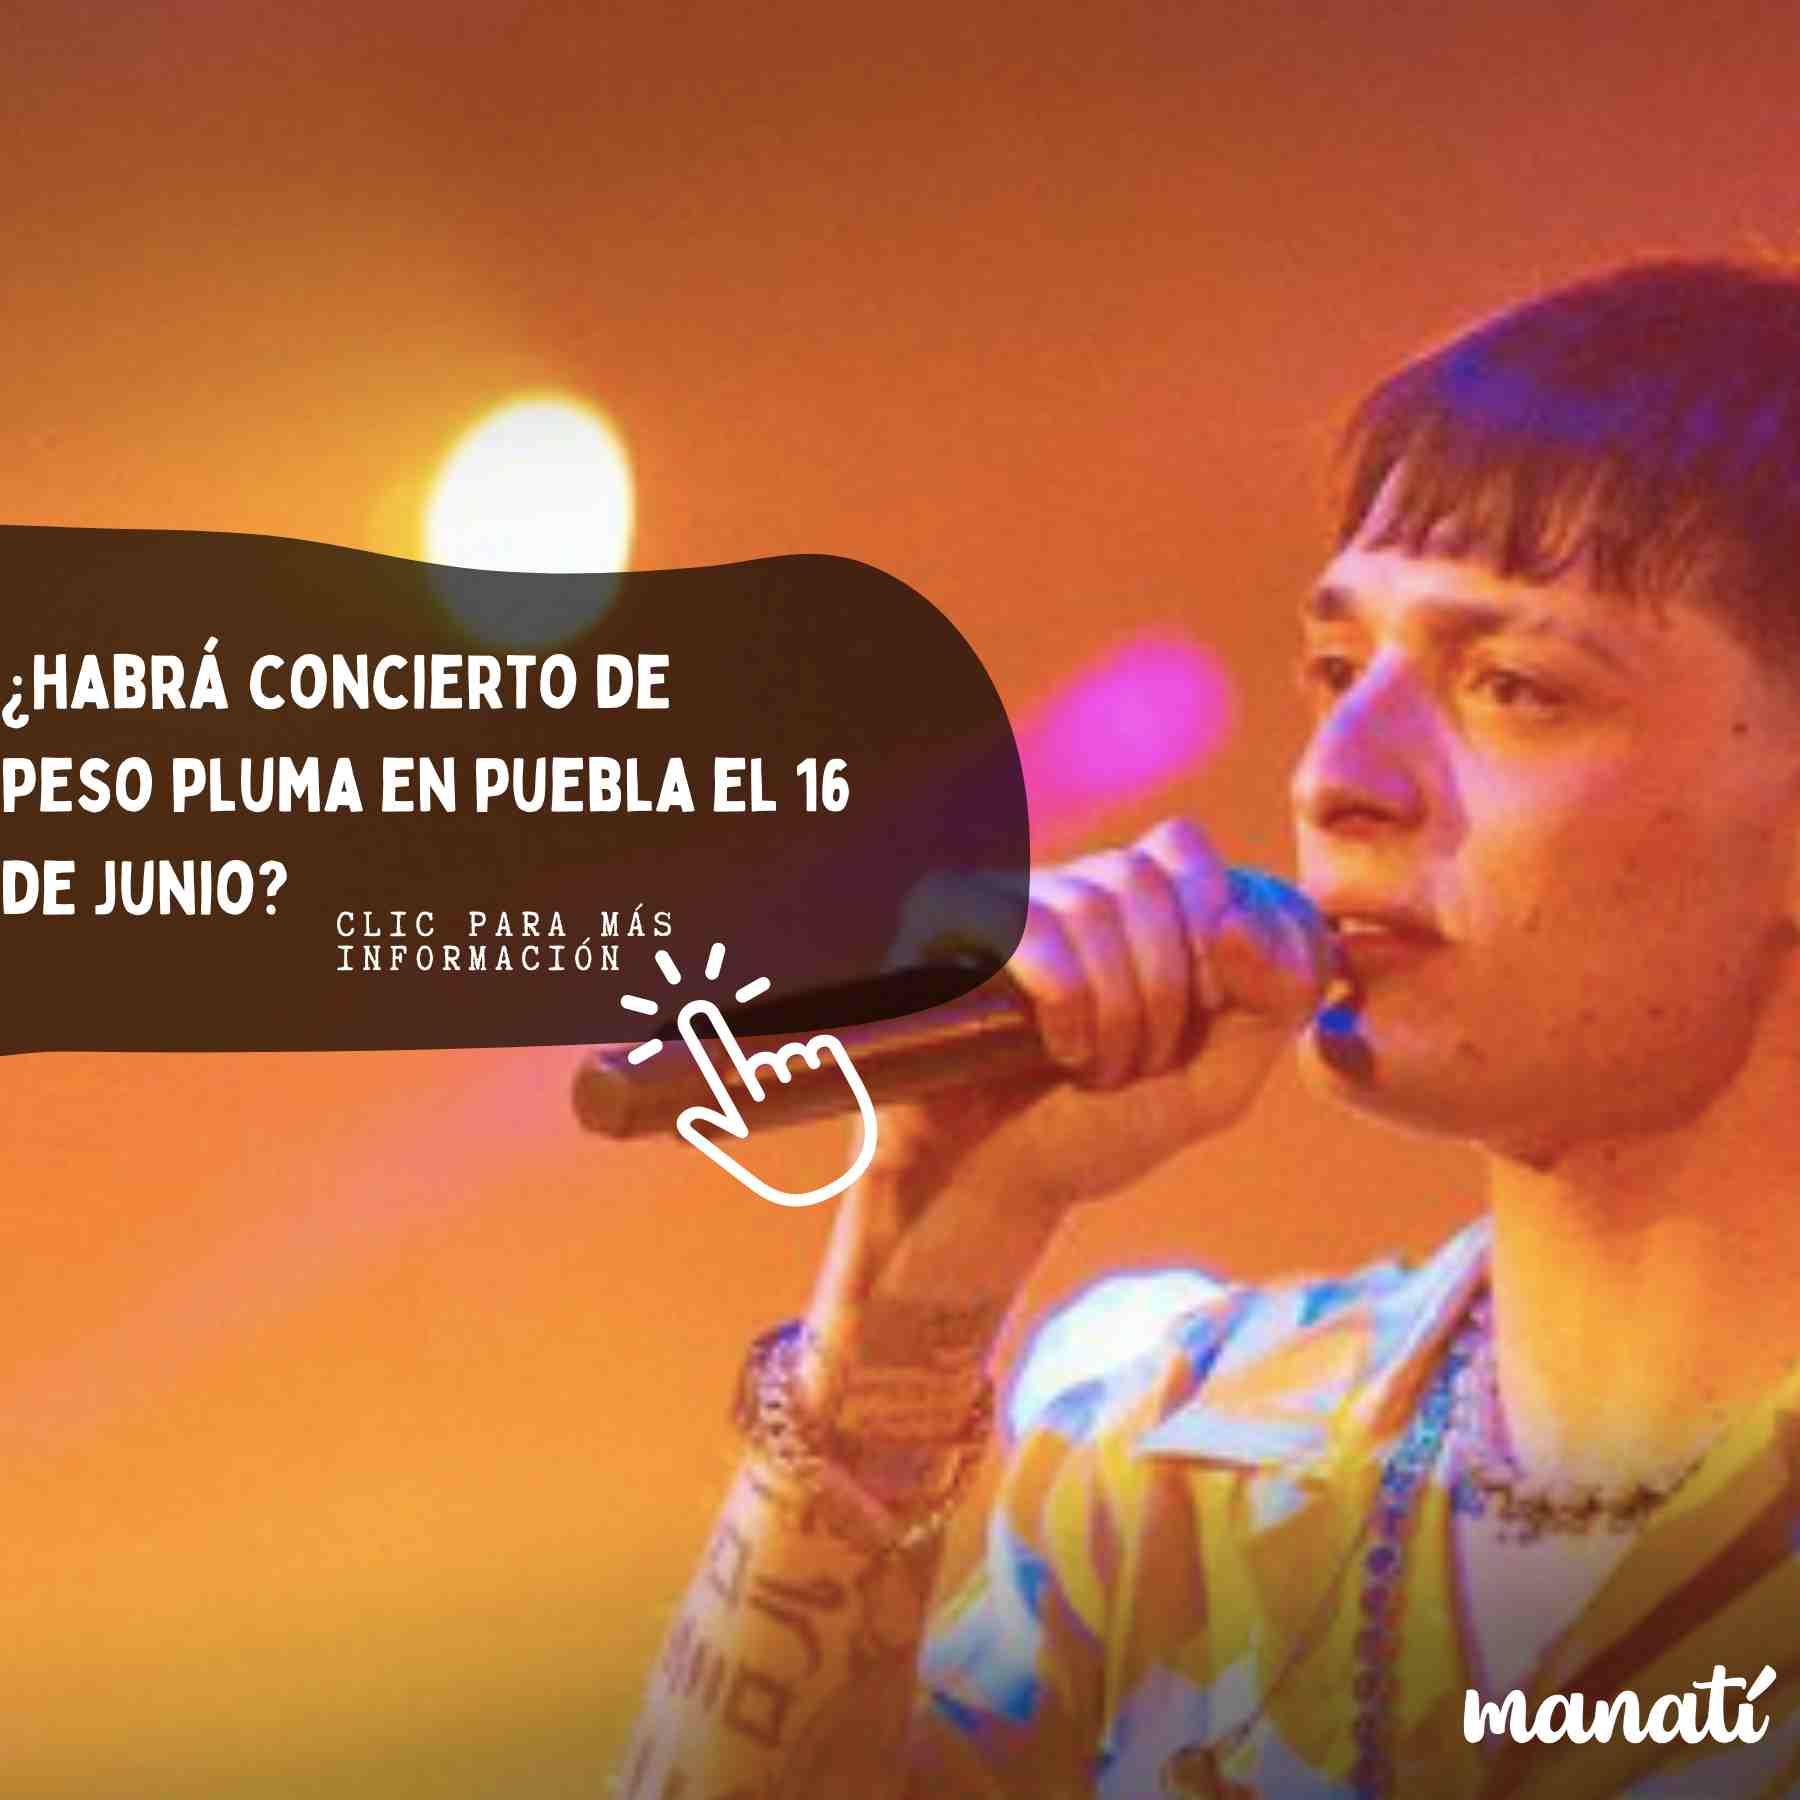 Peso Pluma no dará concierto en Puebla el 16 de junio